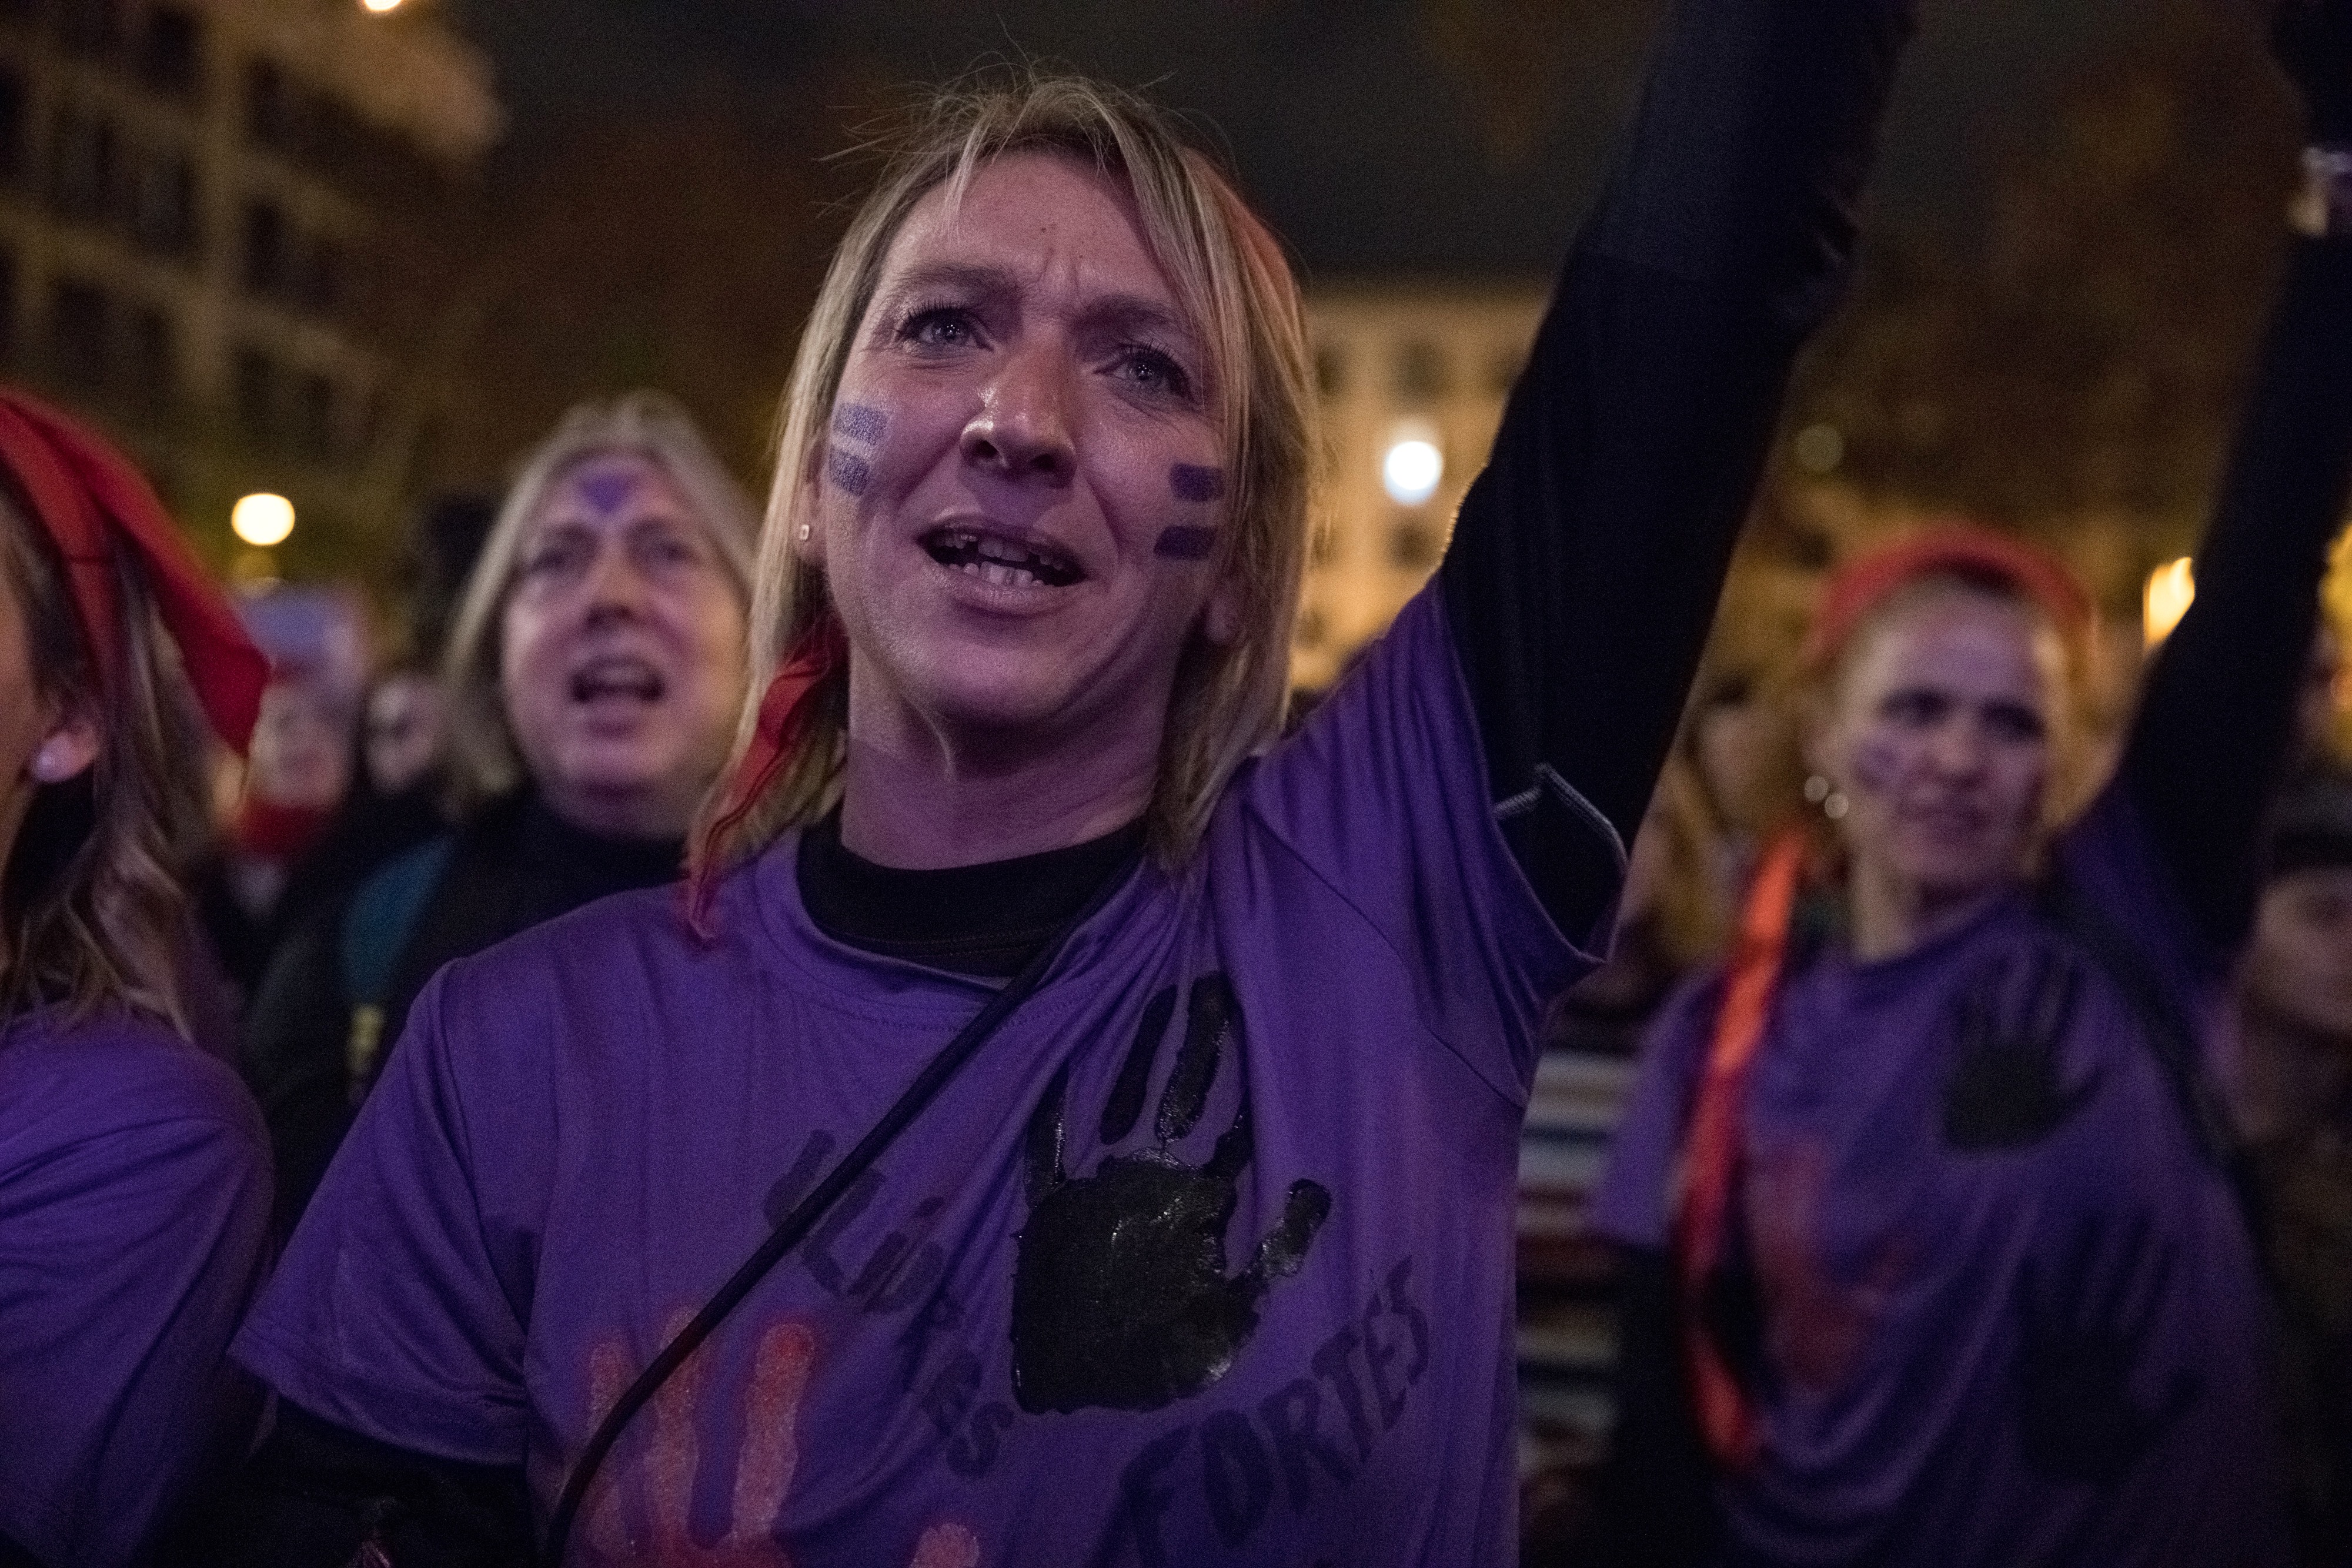 Barcelona crida "S'ha acabat!" a les violències contra les dones en la manifestació del 25-N